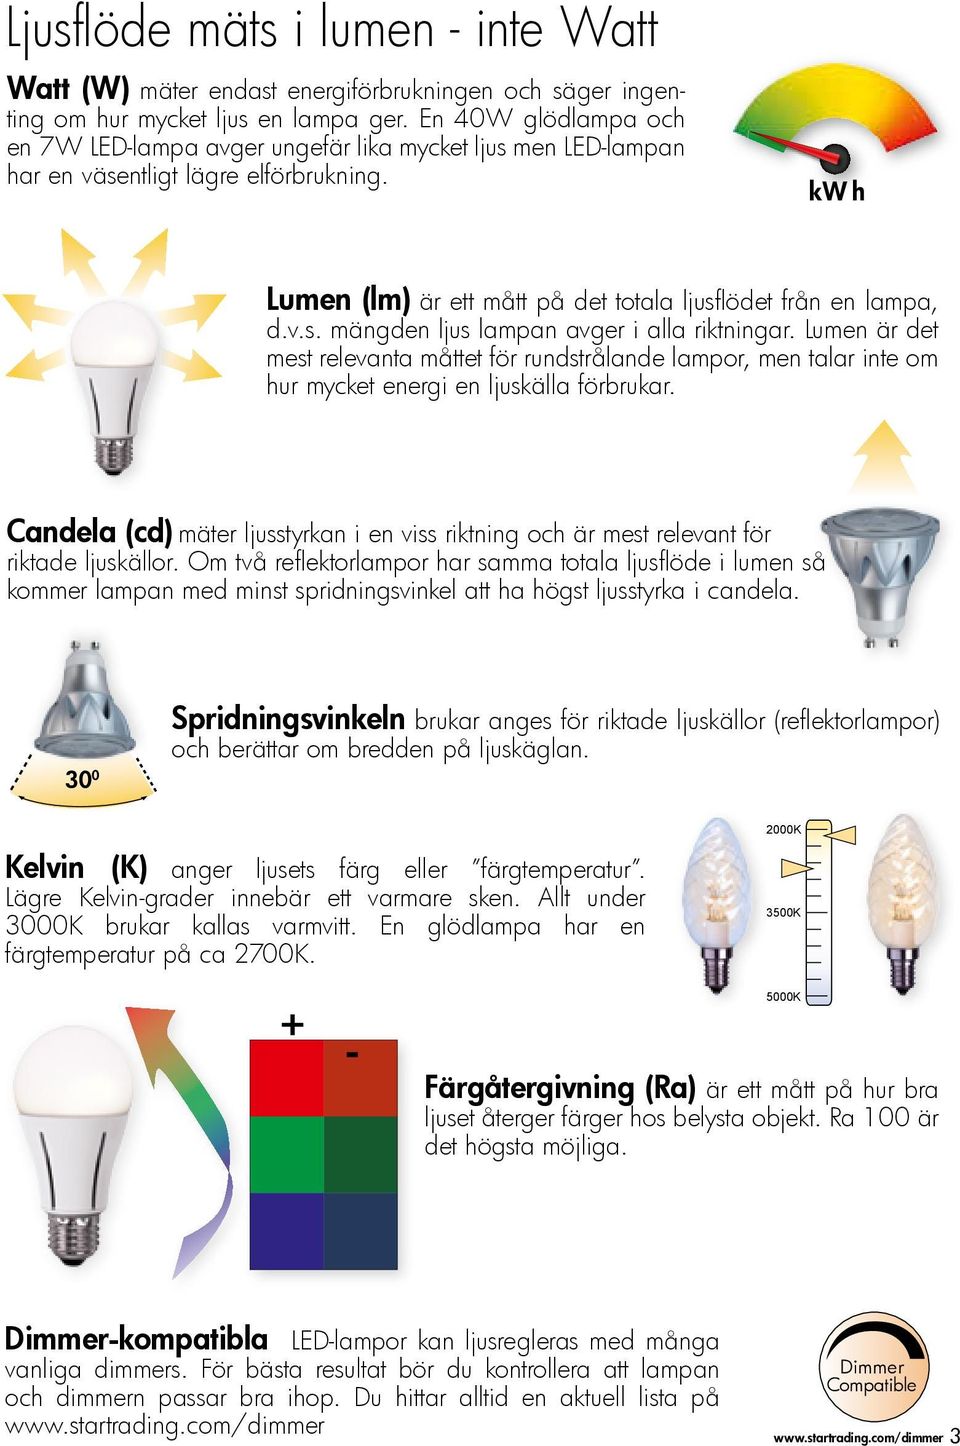 Lumen är det mest relevanta måttet för rundstrålande lampor, men talar inte om hur mycket energi en ljuskälla förbrukar.